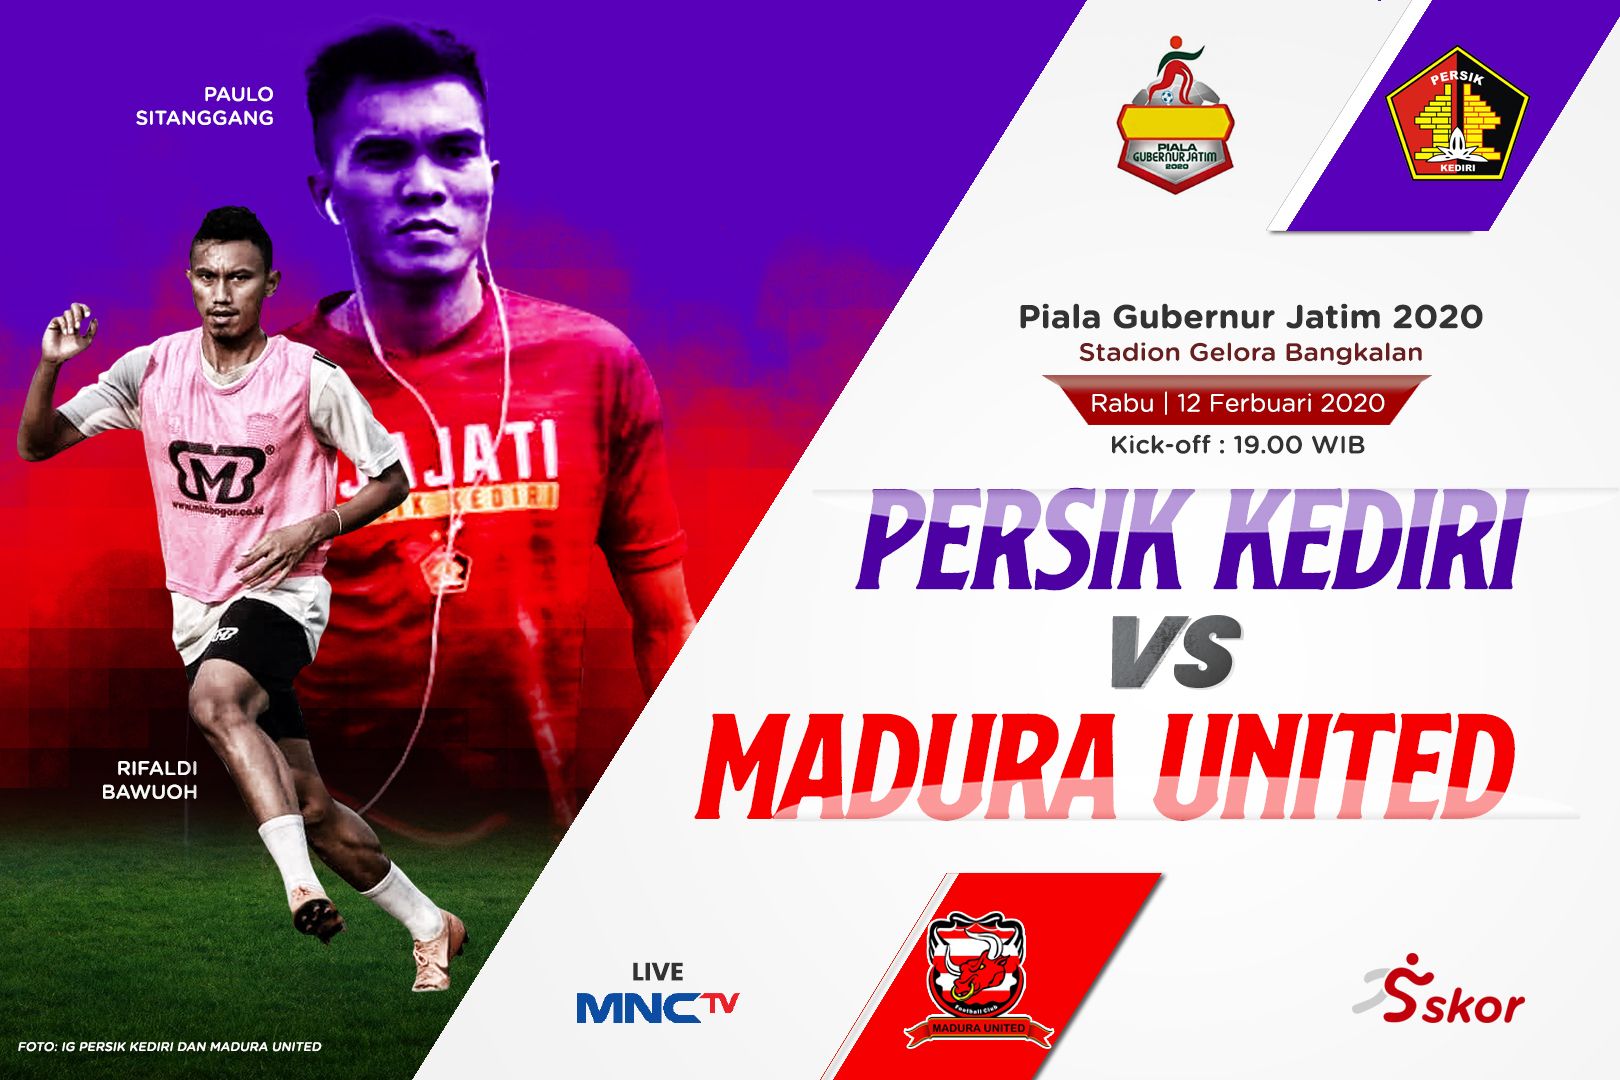 Sedang Berlangsung !! Live Streaming Piala Gubernur Jatim 2020 : Persik Kediri VS Madura United, Gratis Guyss